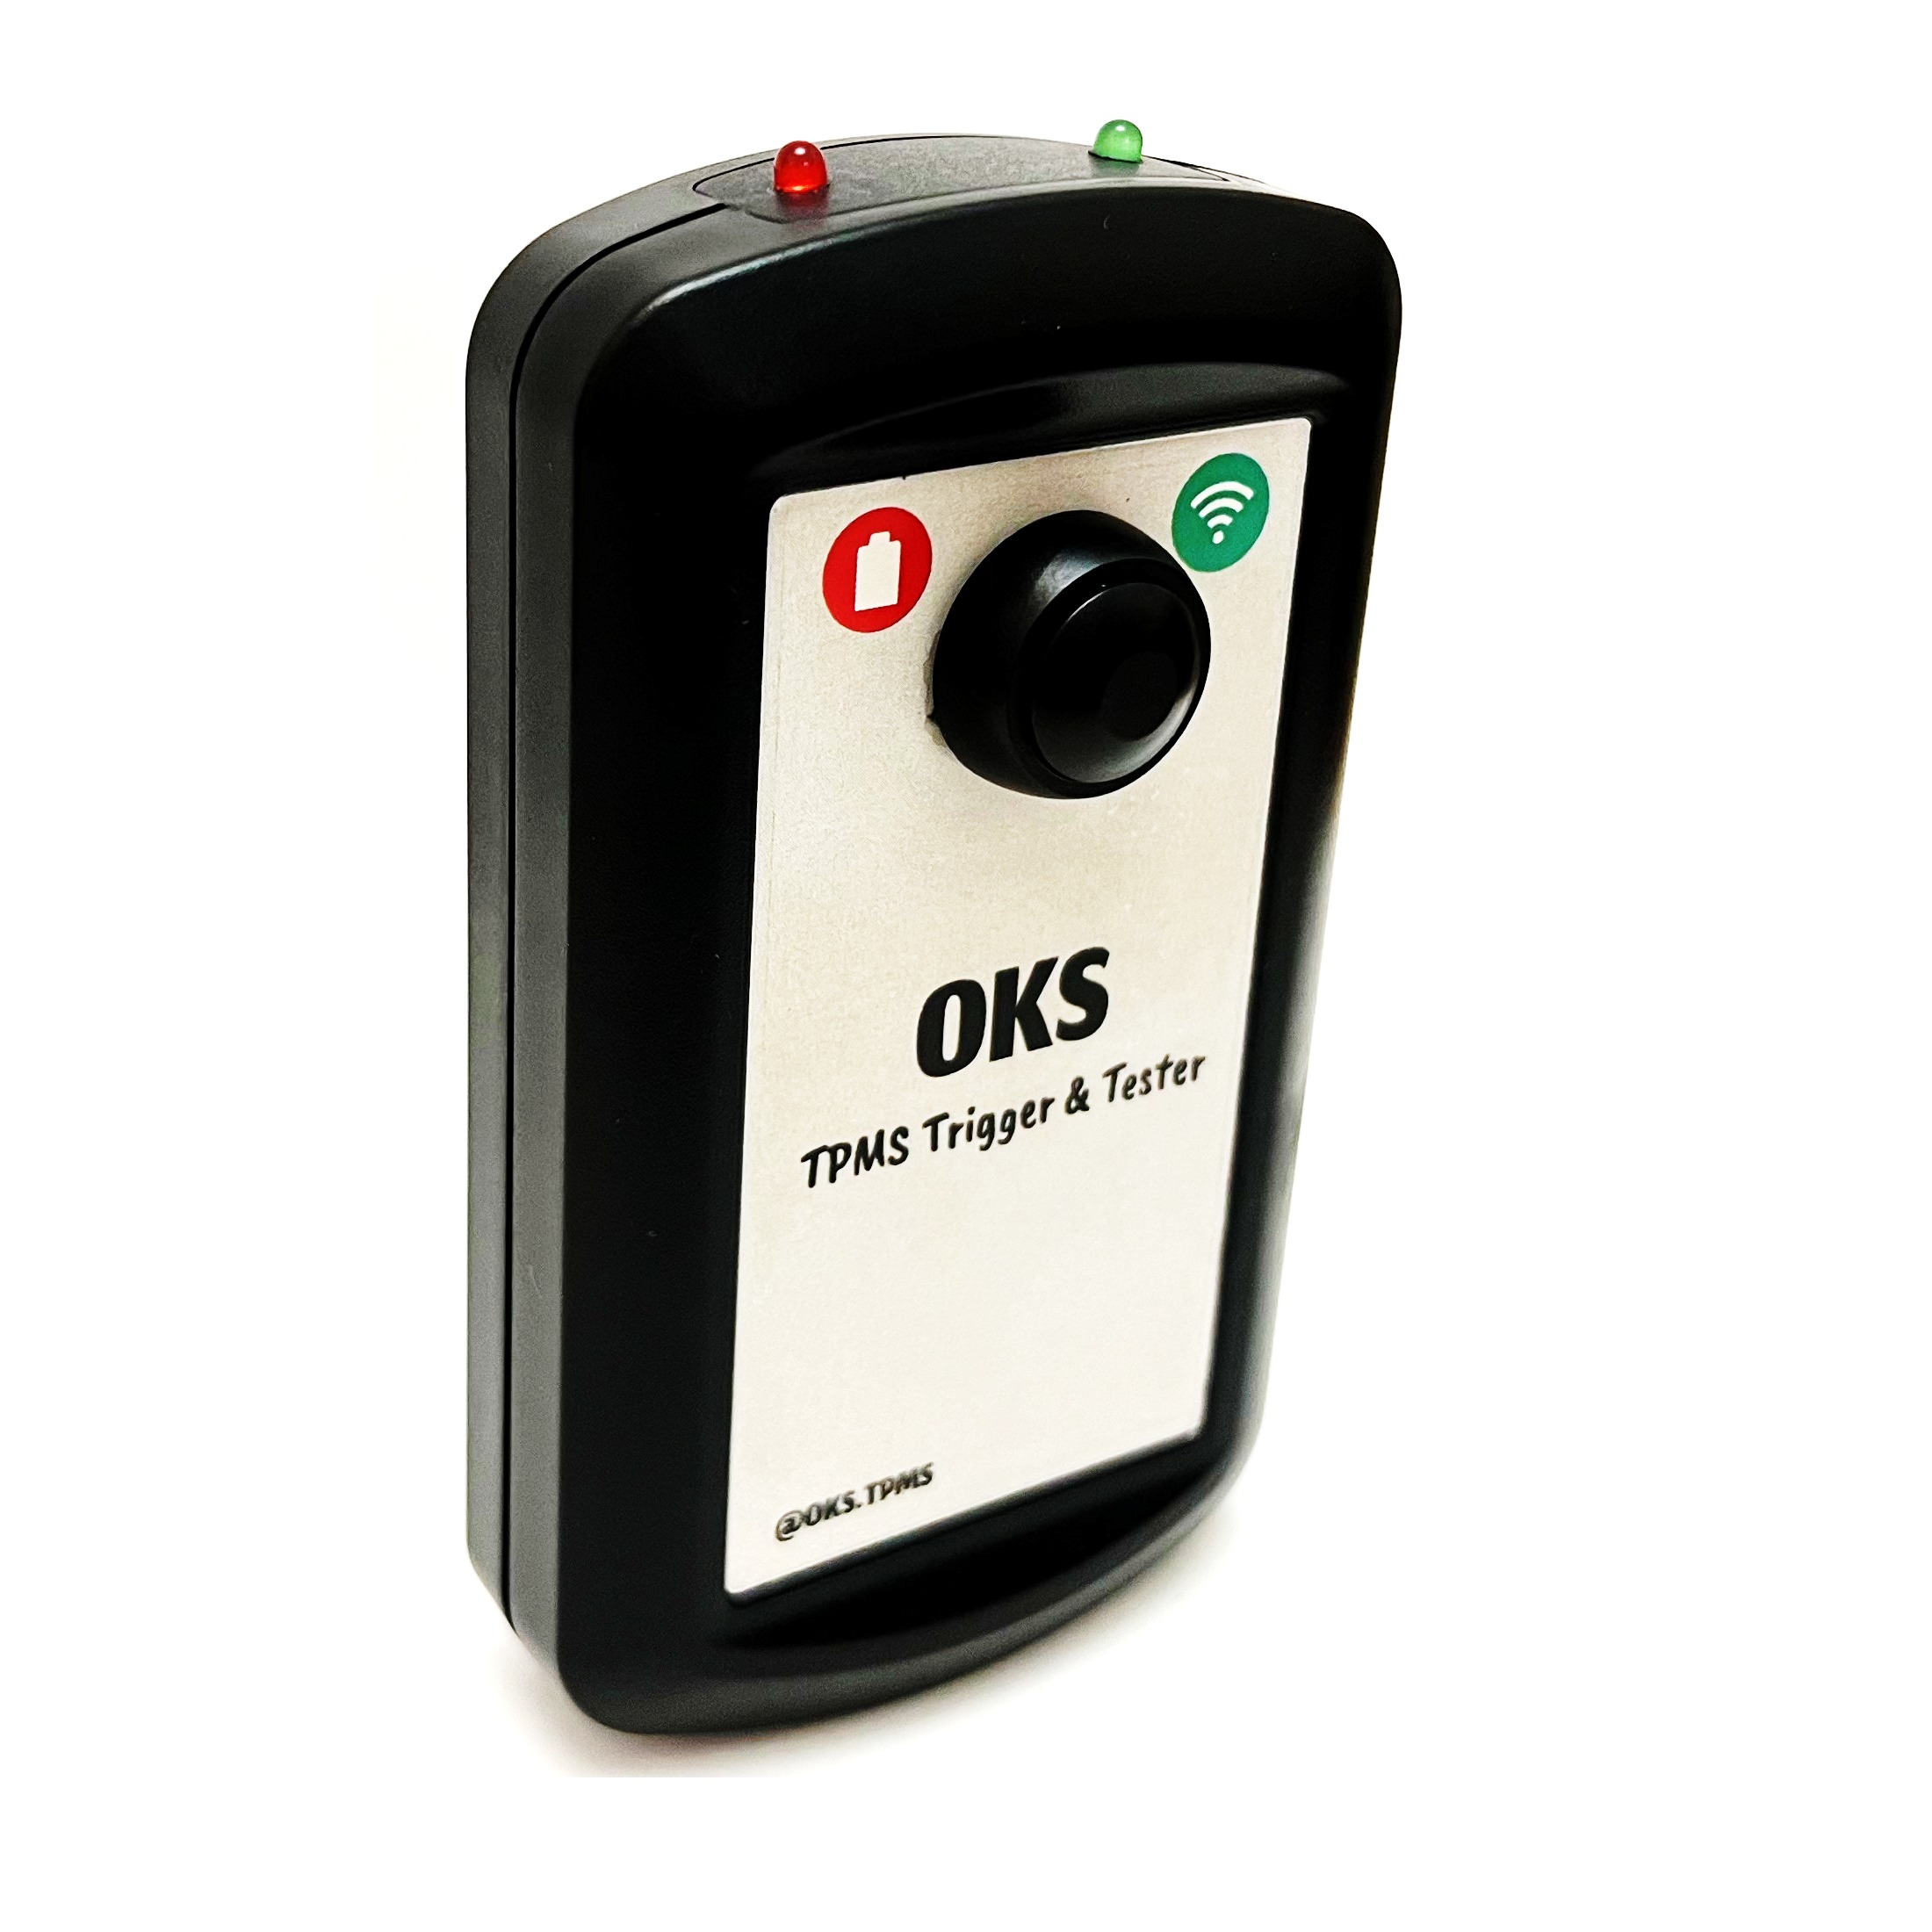 دستگاه تستر و تریگر سنسور مدل OKS TPMS